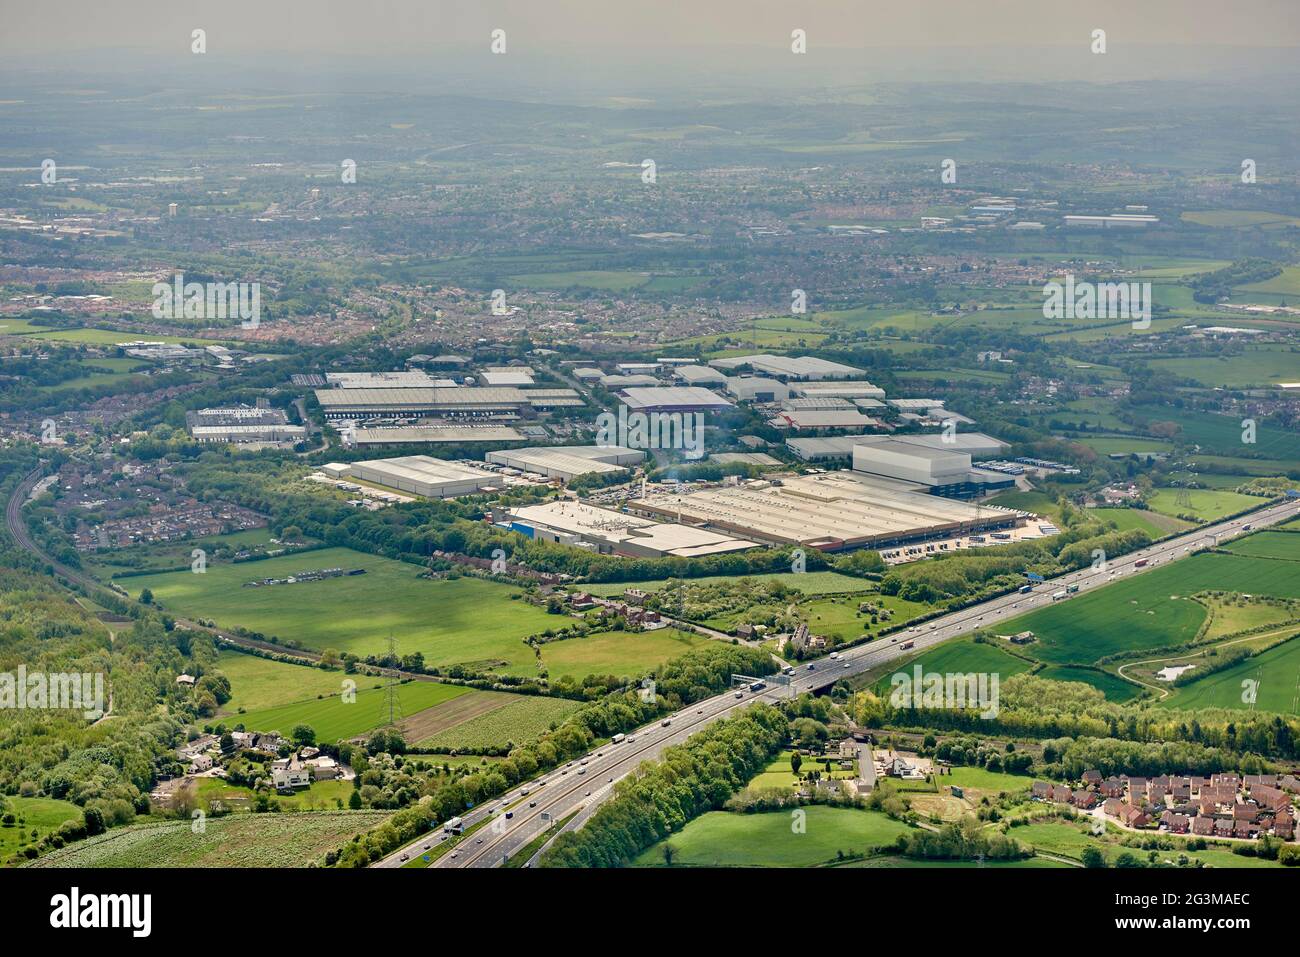 Vue aérienne de la zone industrielle de la jonction 41, Wakefield, West Yorkshire, nord de l'Angleterre, Royaume-Uni Banque D'Images